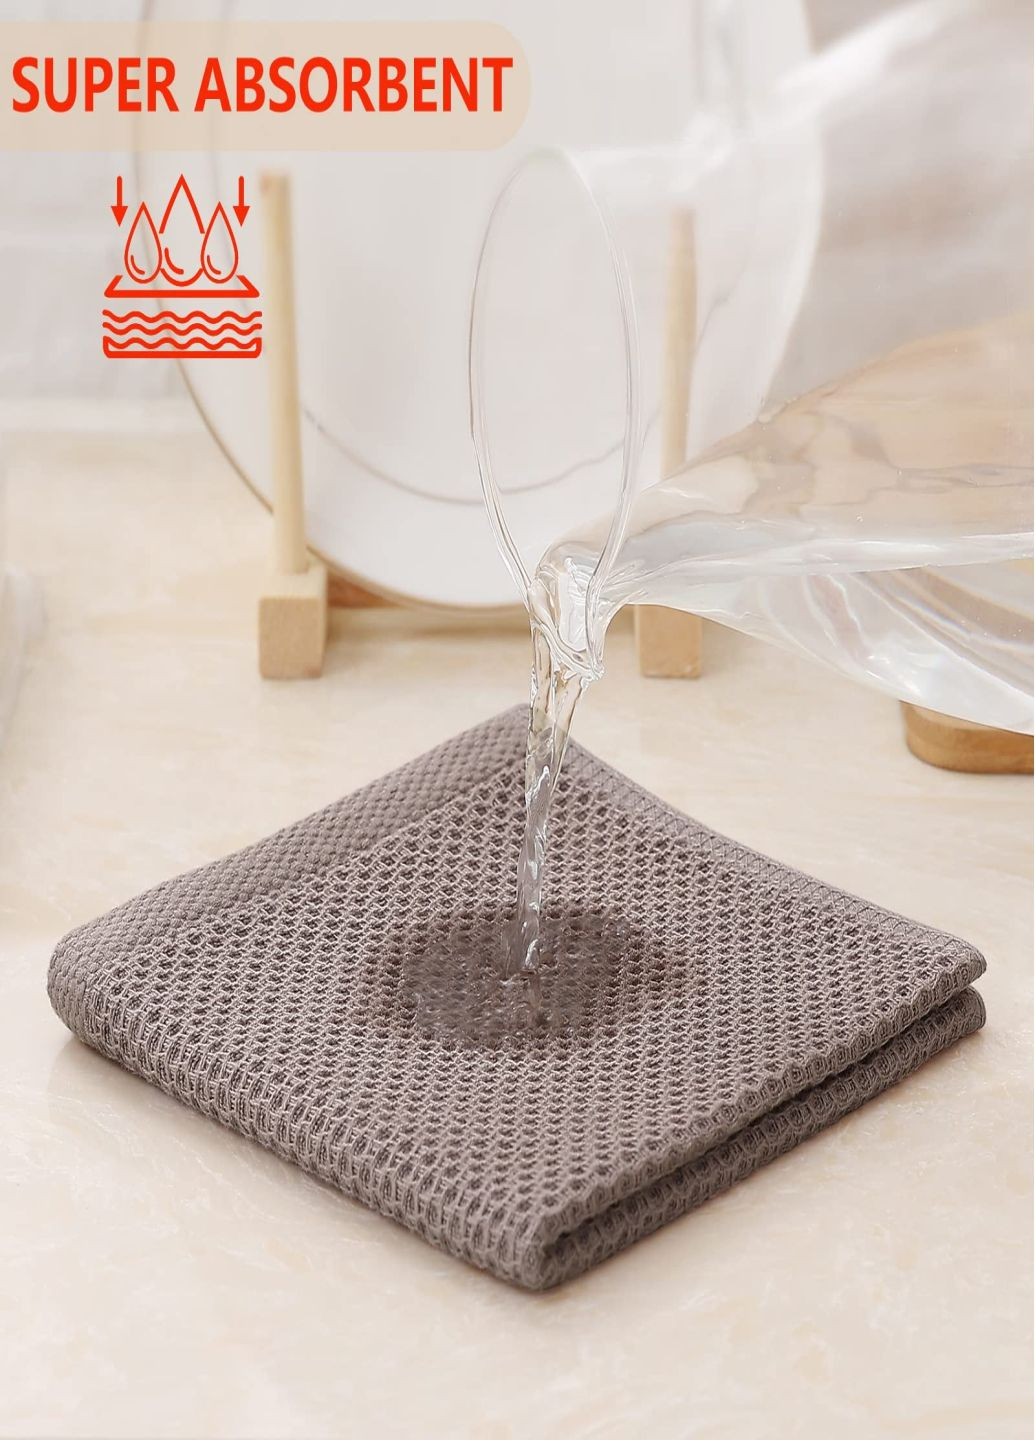 Aquarius набор кухонных полотенец из 100% хлопка - вафельные салфетки для кухни 34*34 см 6 шт кофе кофейный производство - Китай